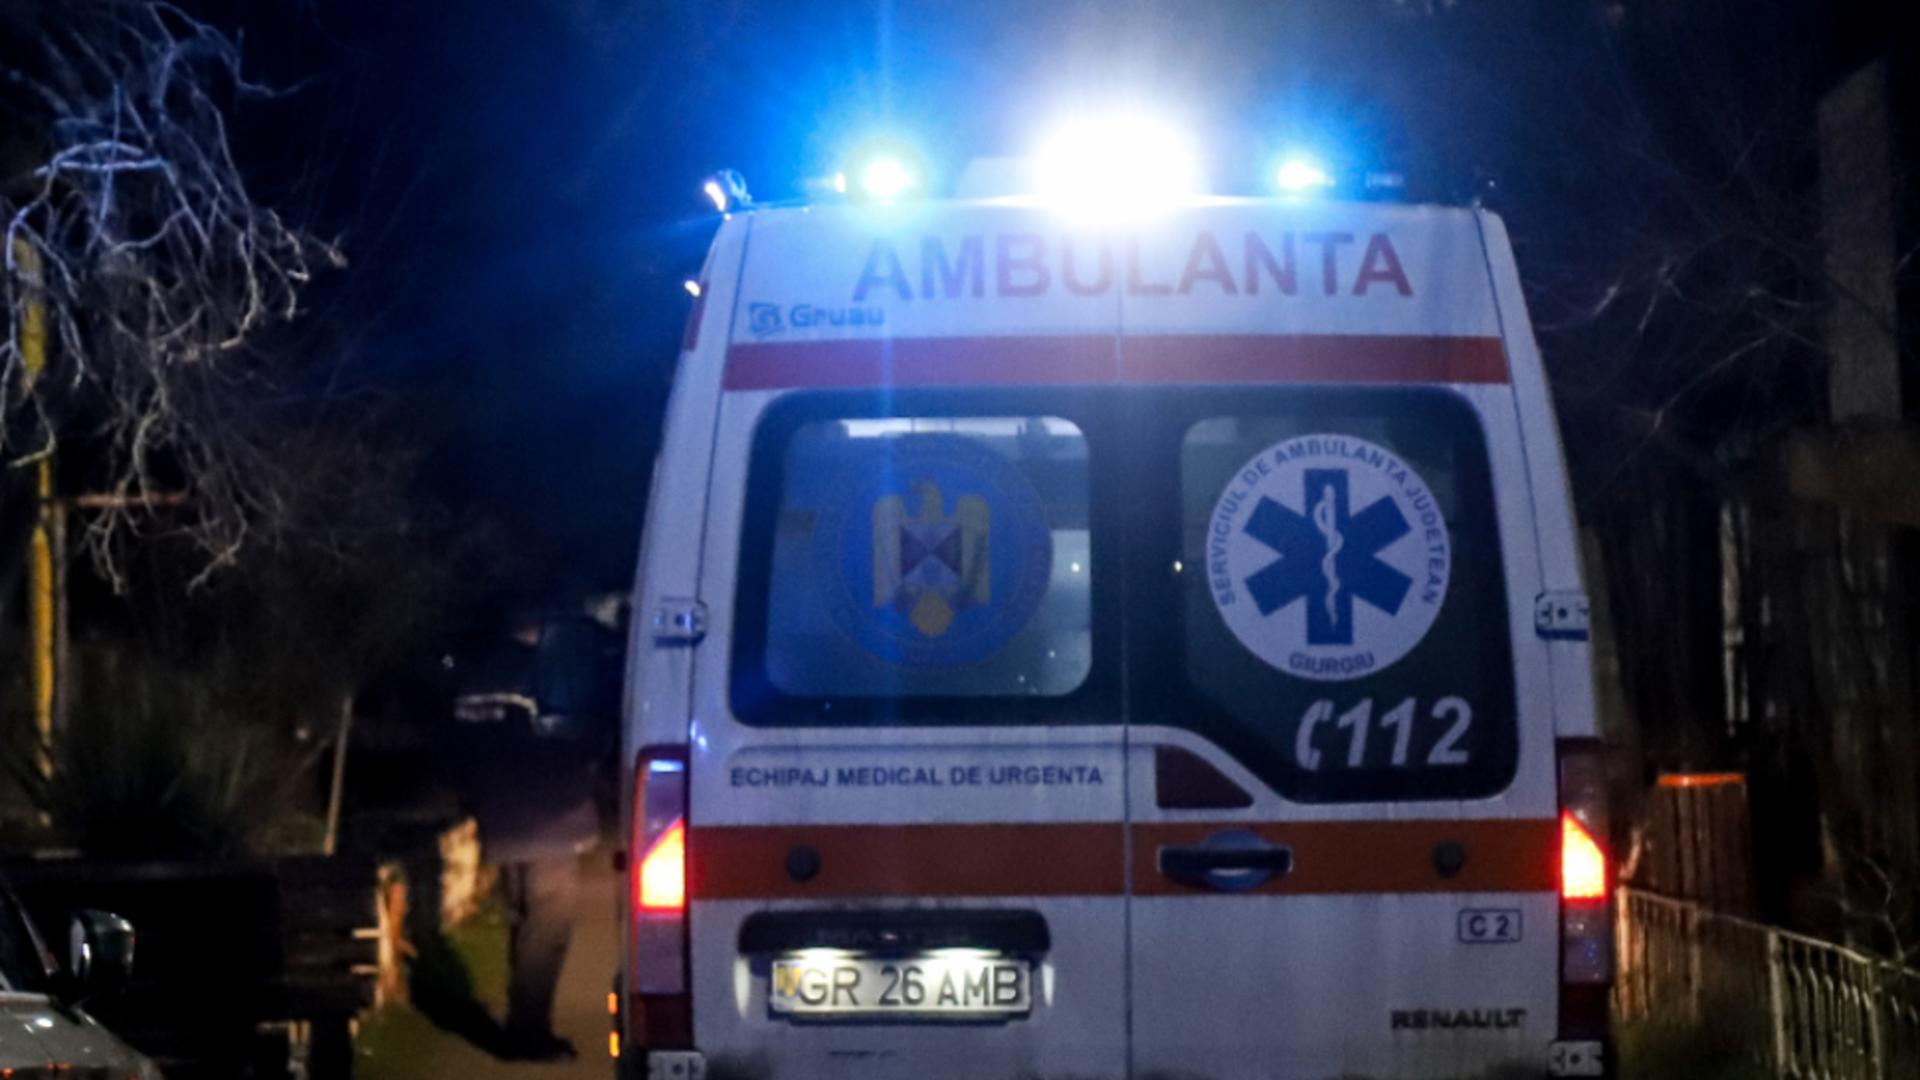 Doi răniți, dintre care unul grav, după ce o căruţă şi un autoturism s-au ciocnit, pe DN 25, în județul Galați/ Arhivă foto